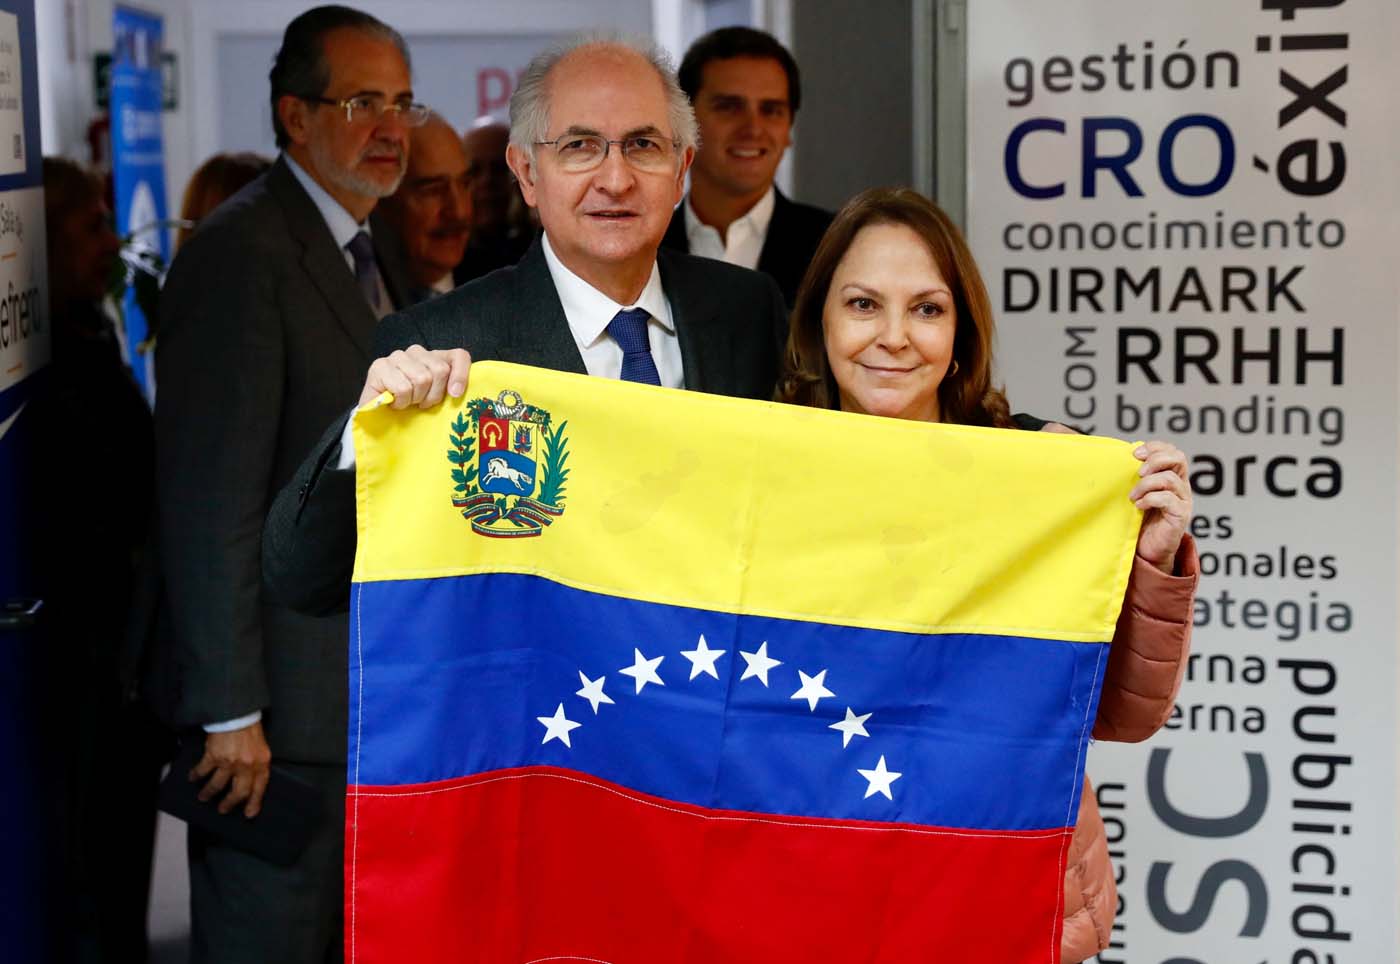 Mensaje a Venezuela y a los venezolanos de Antonio Ledezma y su esposa Mitzy